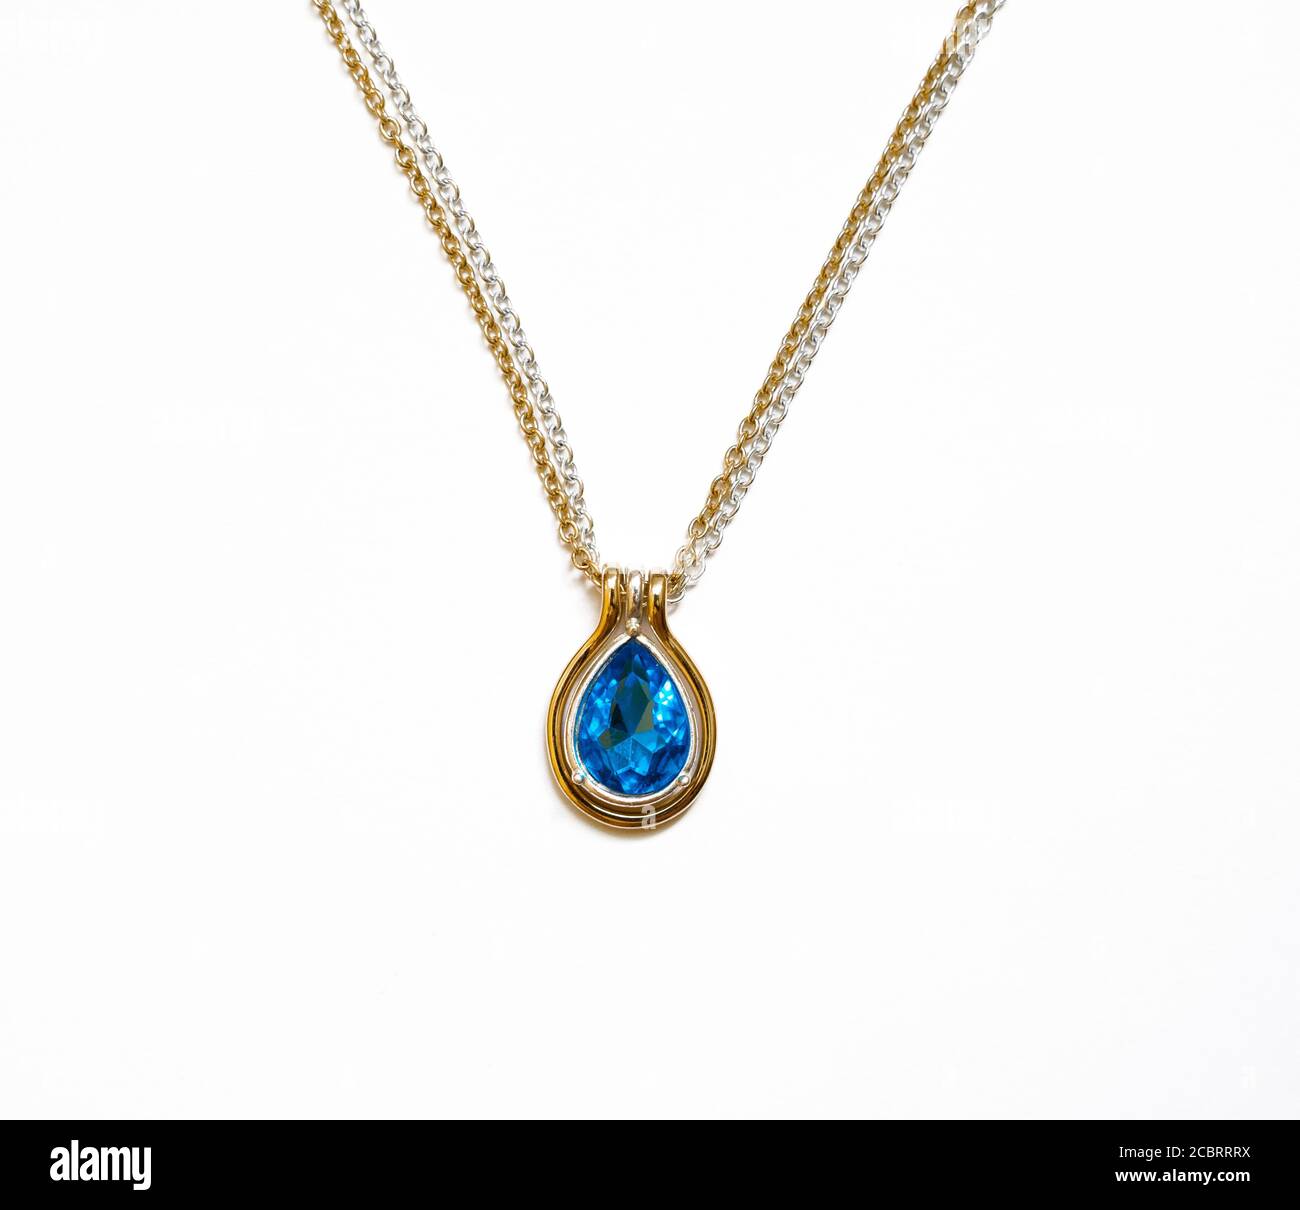 Collar de oro plateado con una piedra azul Fotografía de stock - Alamy